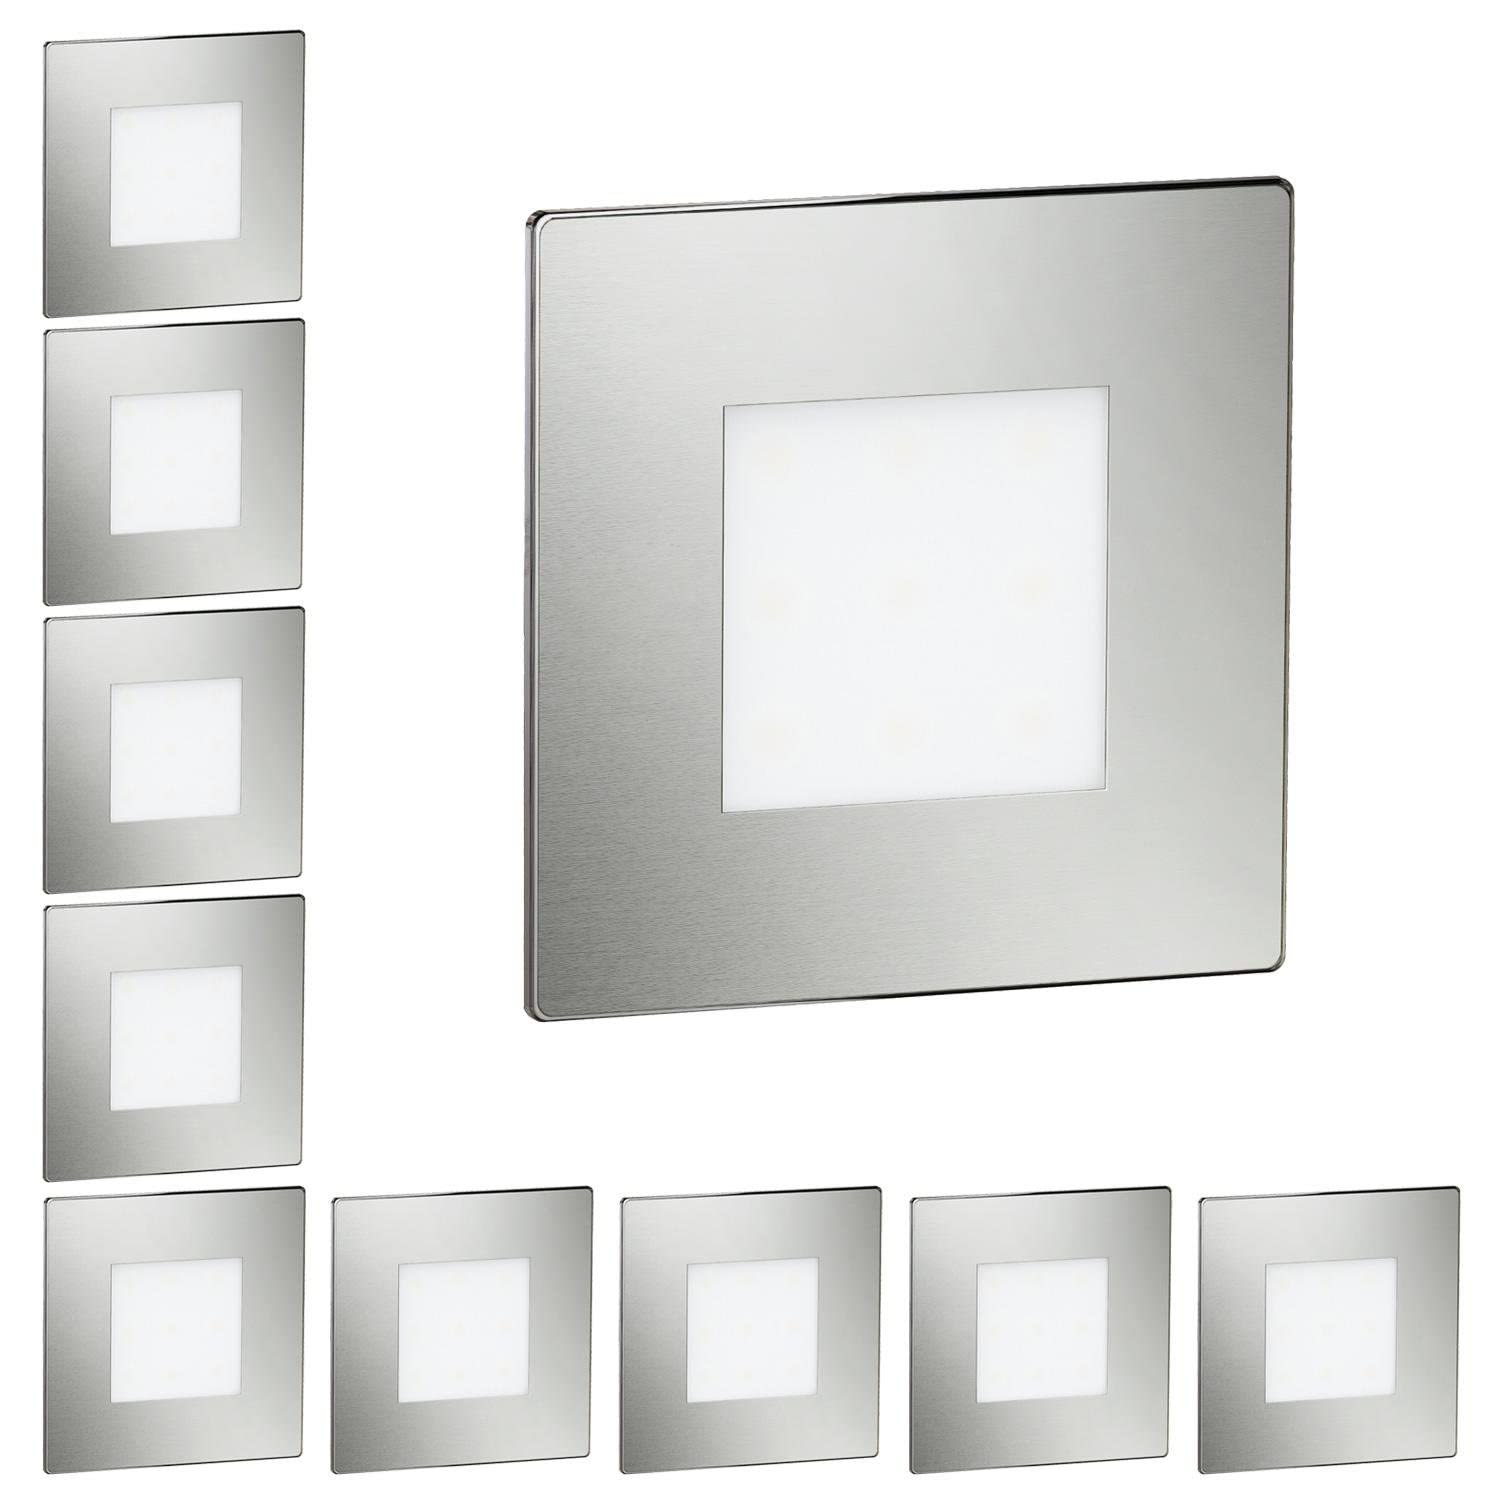 ledscom.de 10 Stück LED Treppenlicht/Wandeinbauleuchte FEX für innen und außen, eckig, edelstahl, 85 x 85mm, kaltweiß